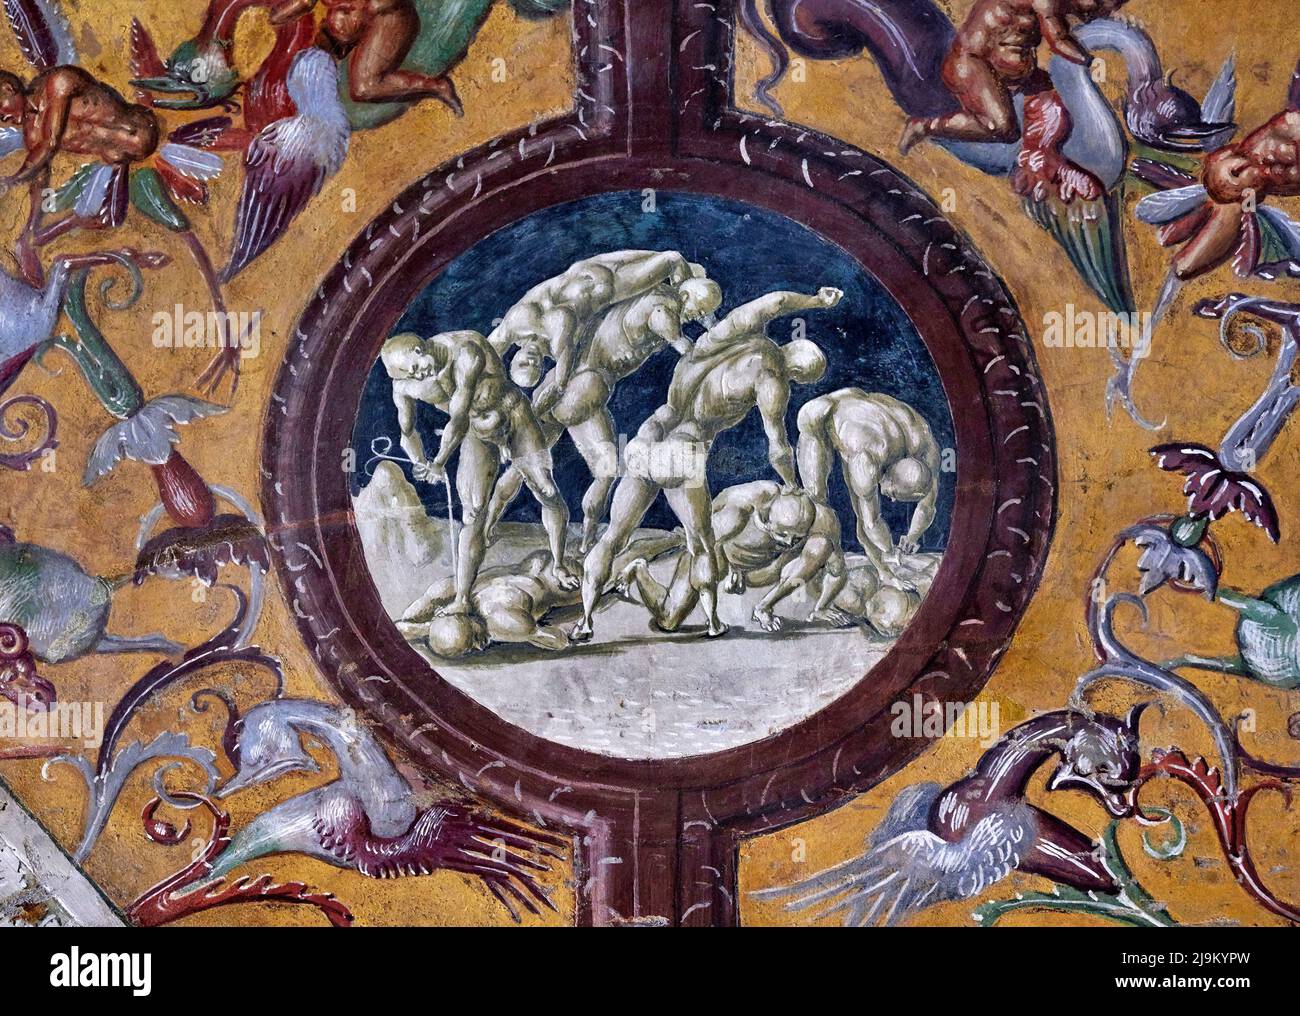 L’eccidio dei Pompeiani - affianco nella Cappella di San Brizio - Luca Signorelli - 1502 - Orvieto (Terni), Italia, Duomo di S.Maria Assunta Foto Stock